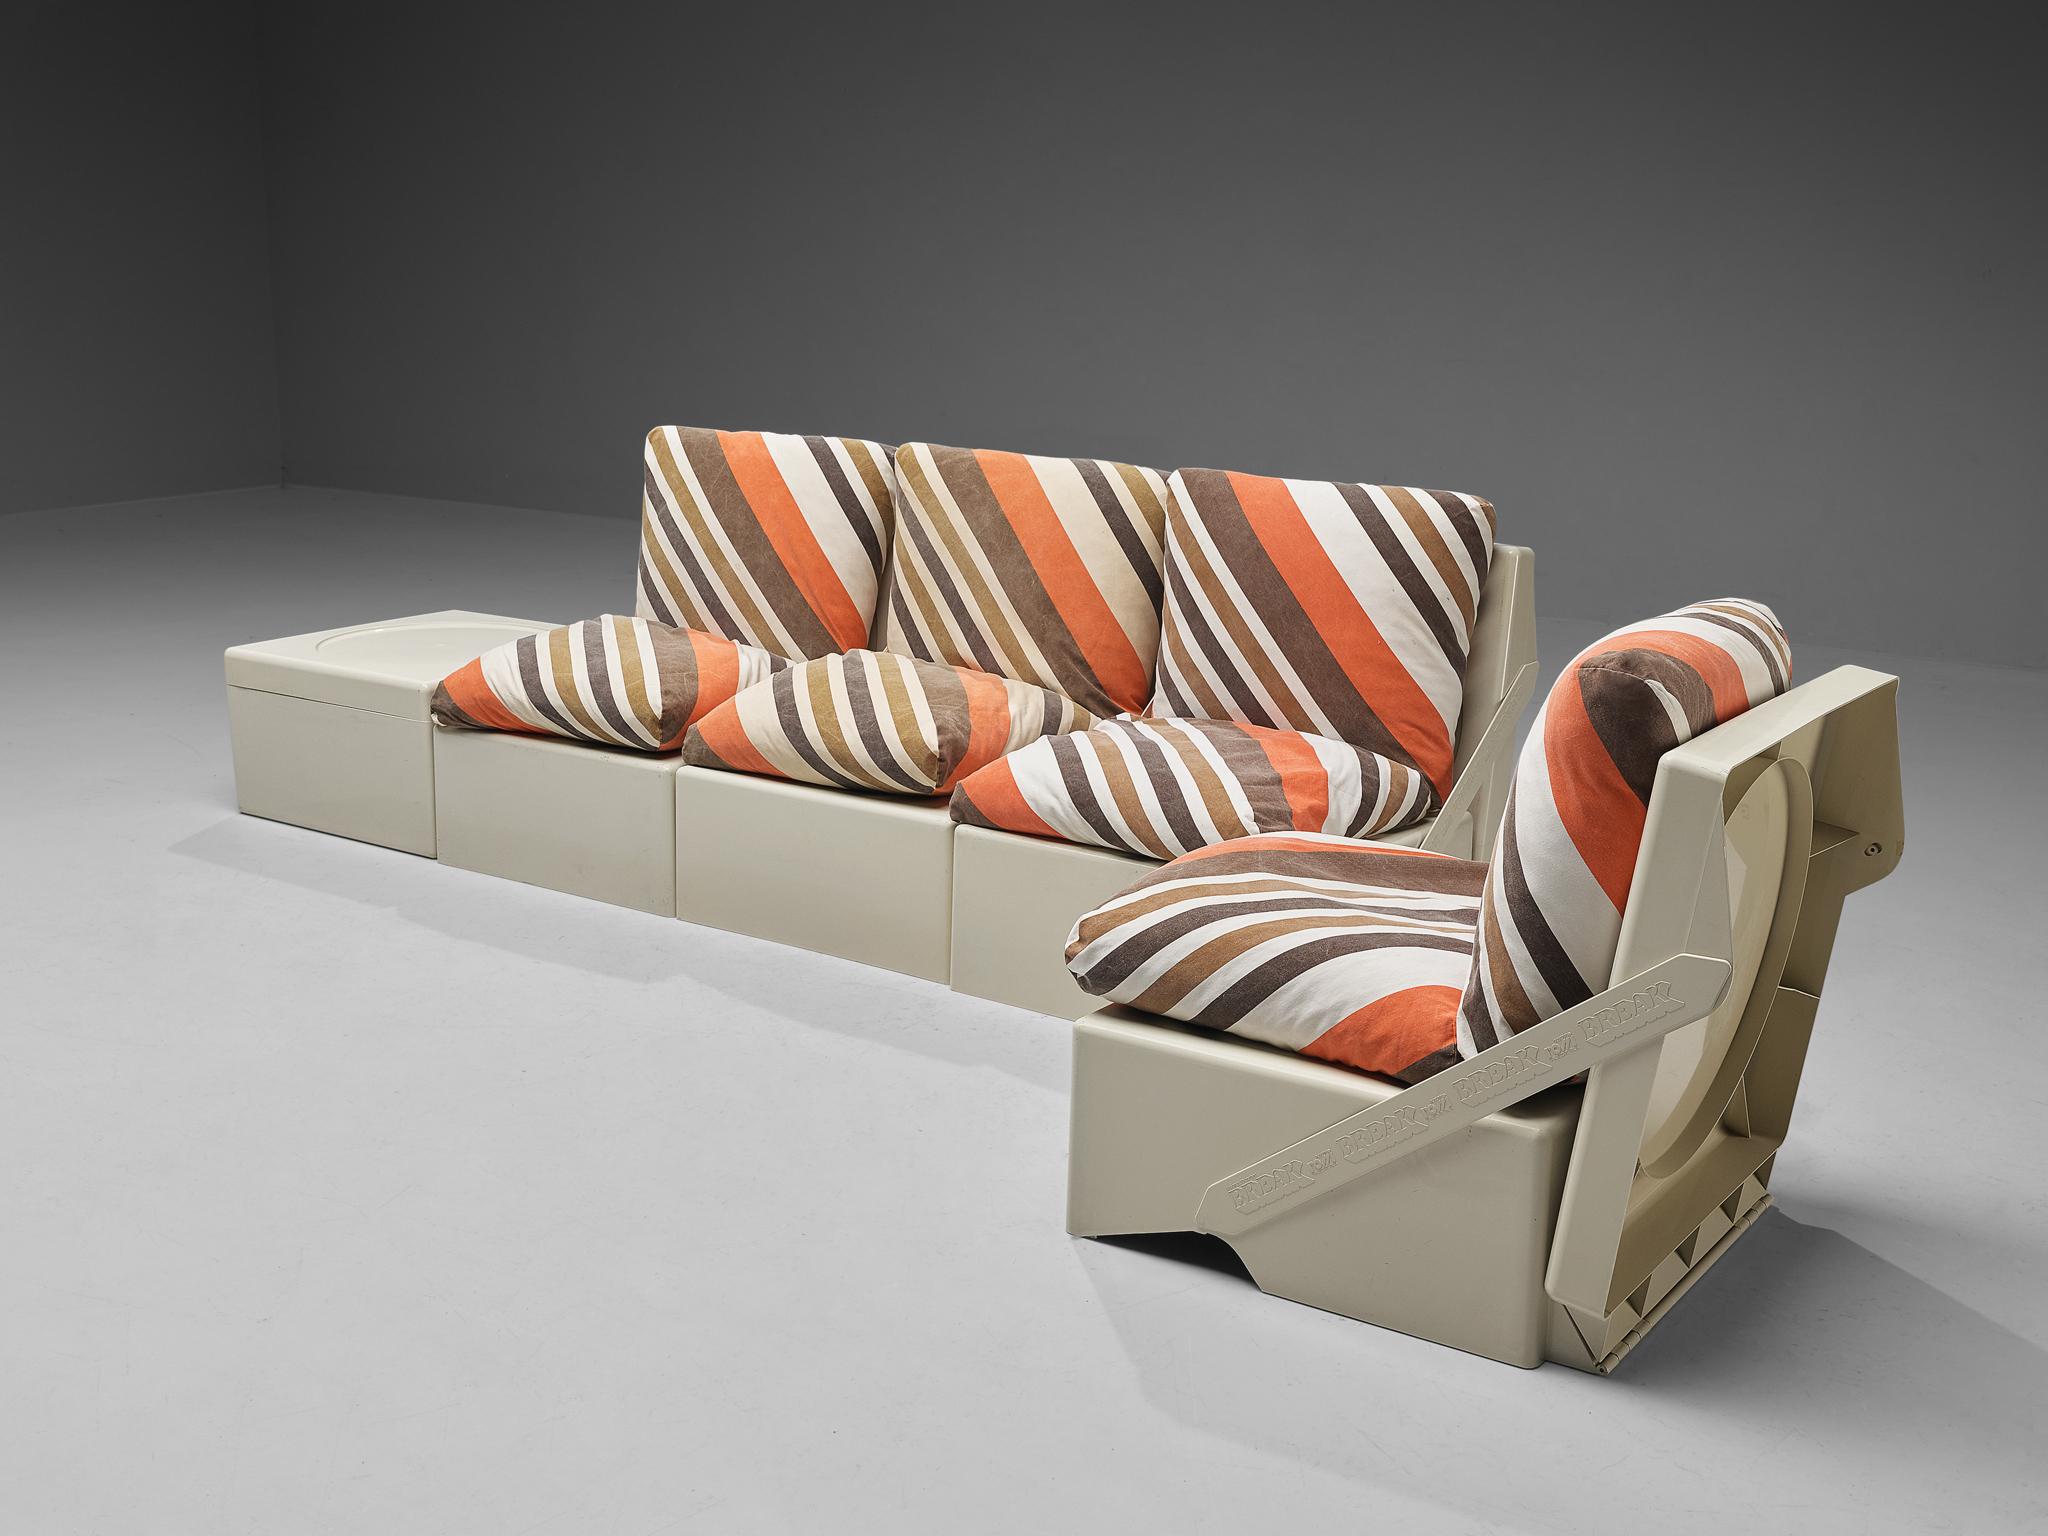 Aldo Barberi for Rossi di Albizzate ‘Break’ Portable Folding Lounge Chairs For Sale 6